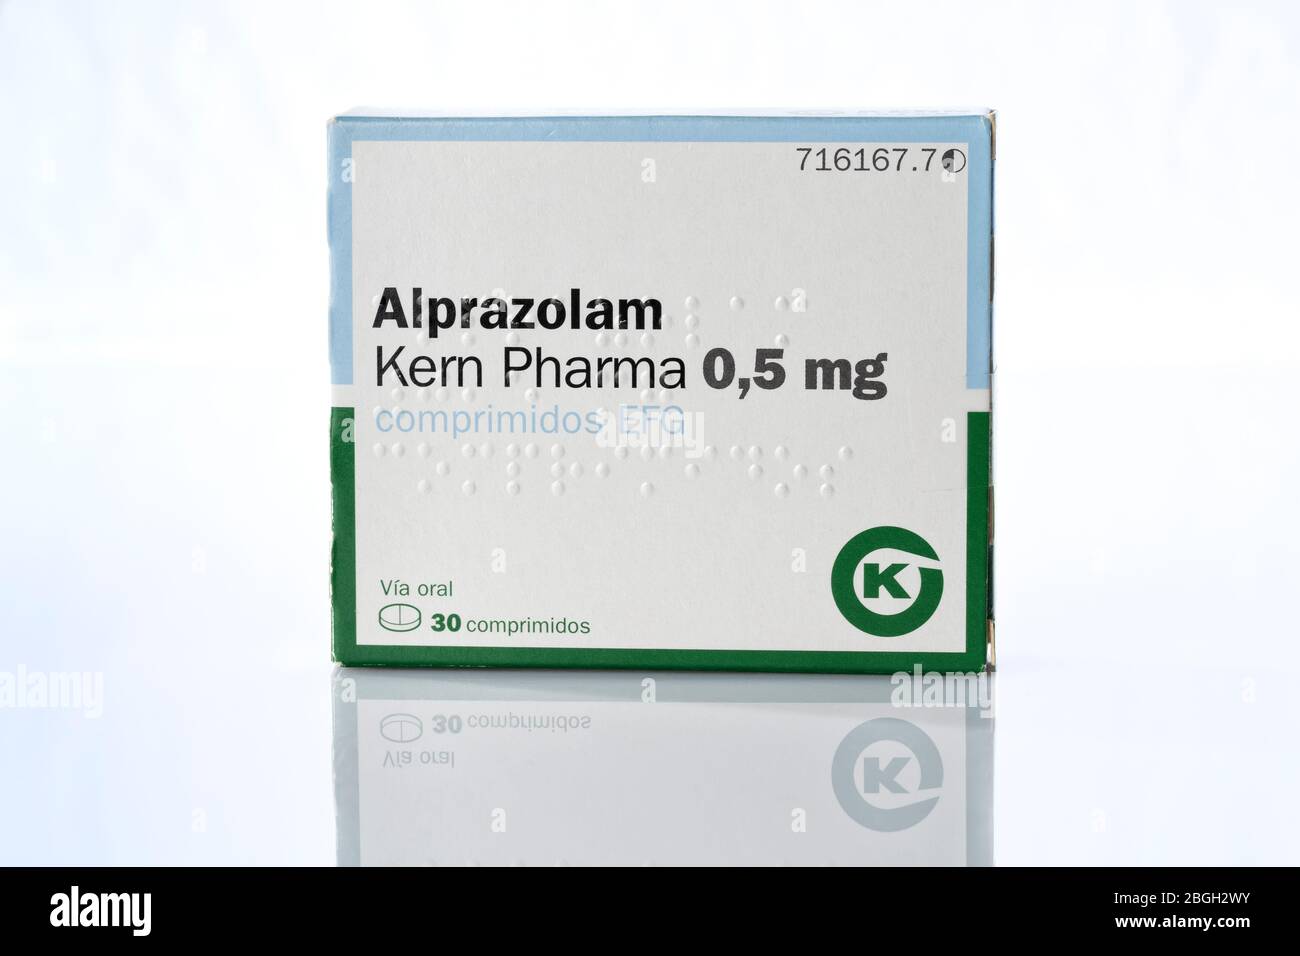 El alprazolam pertenece a un grupo de medicamentos llamados tranquilizantes (ansiolíticos), derivados del compuesto llamado benzodiacepina, que actúan sobre la ansiedad, Foto de stock